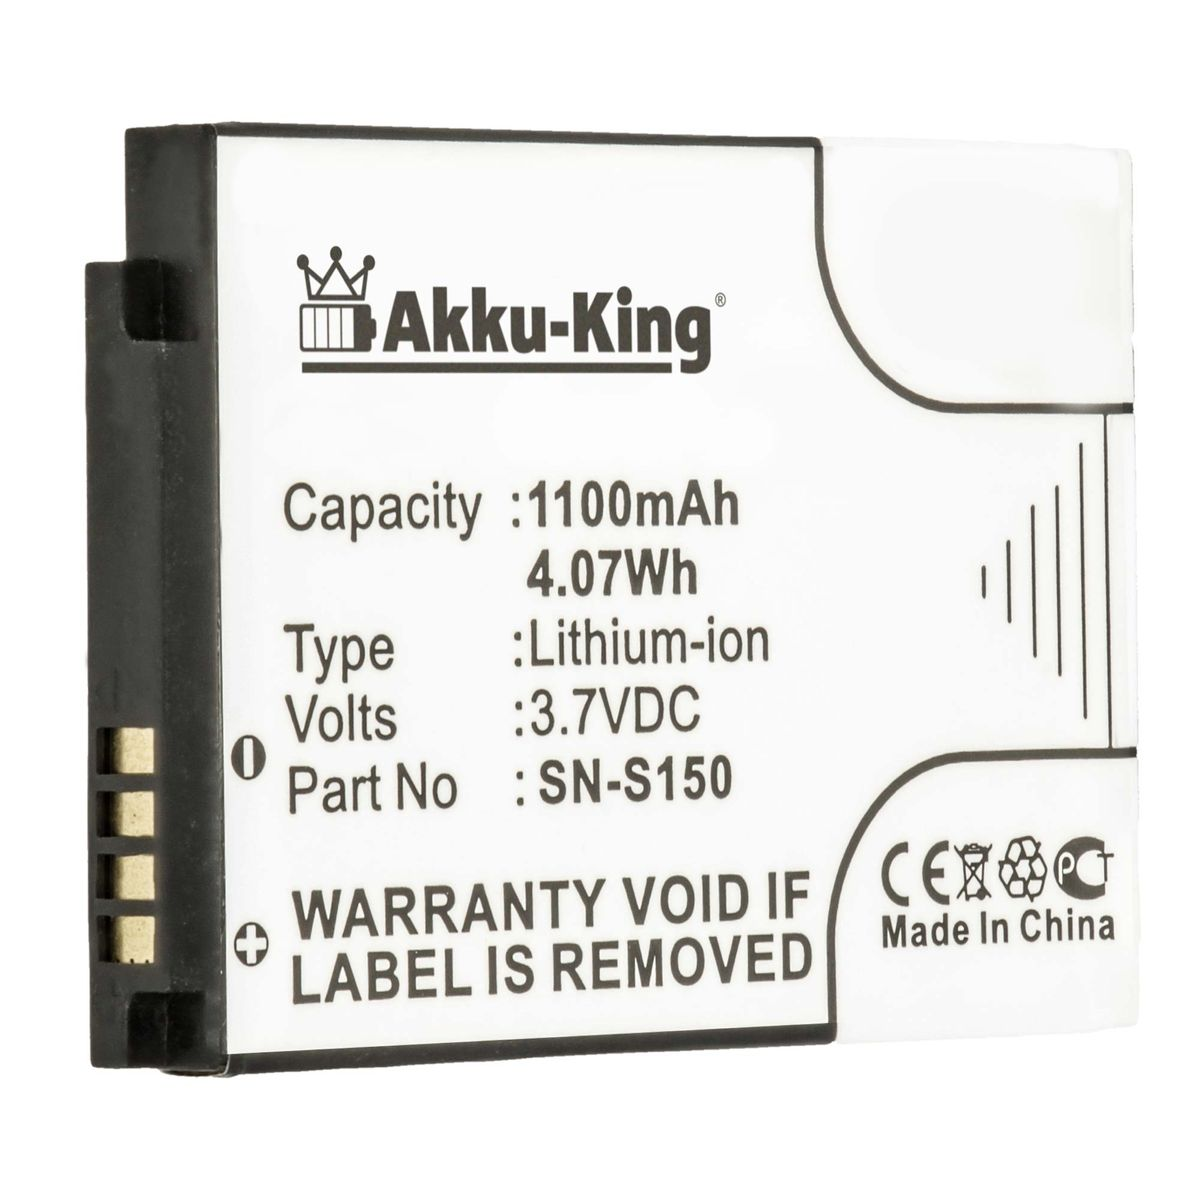 AKKU-KING Akku Volt, 3.7 mit Philips N-S150 Li-Ion 1100mAh Geräte-Akku, kompatibel